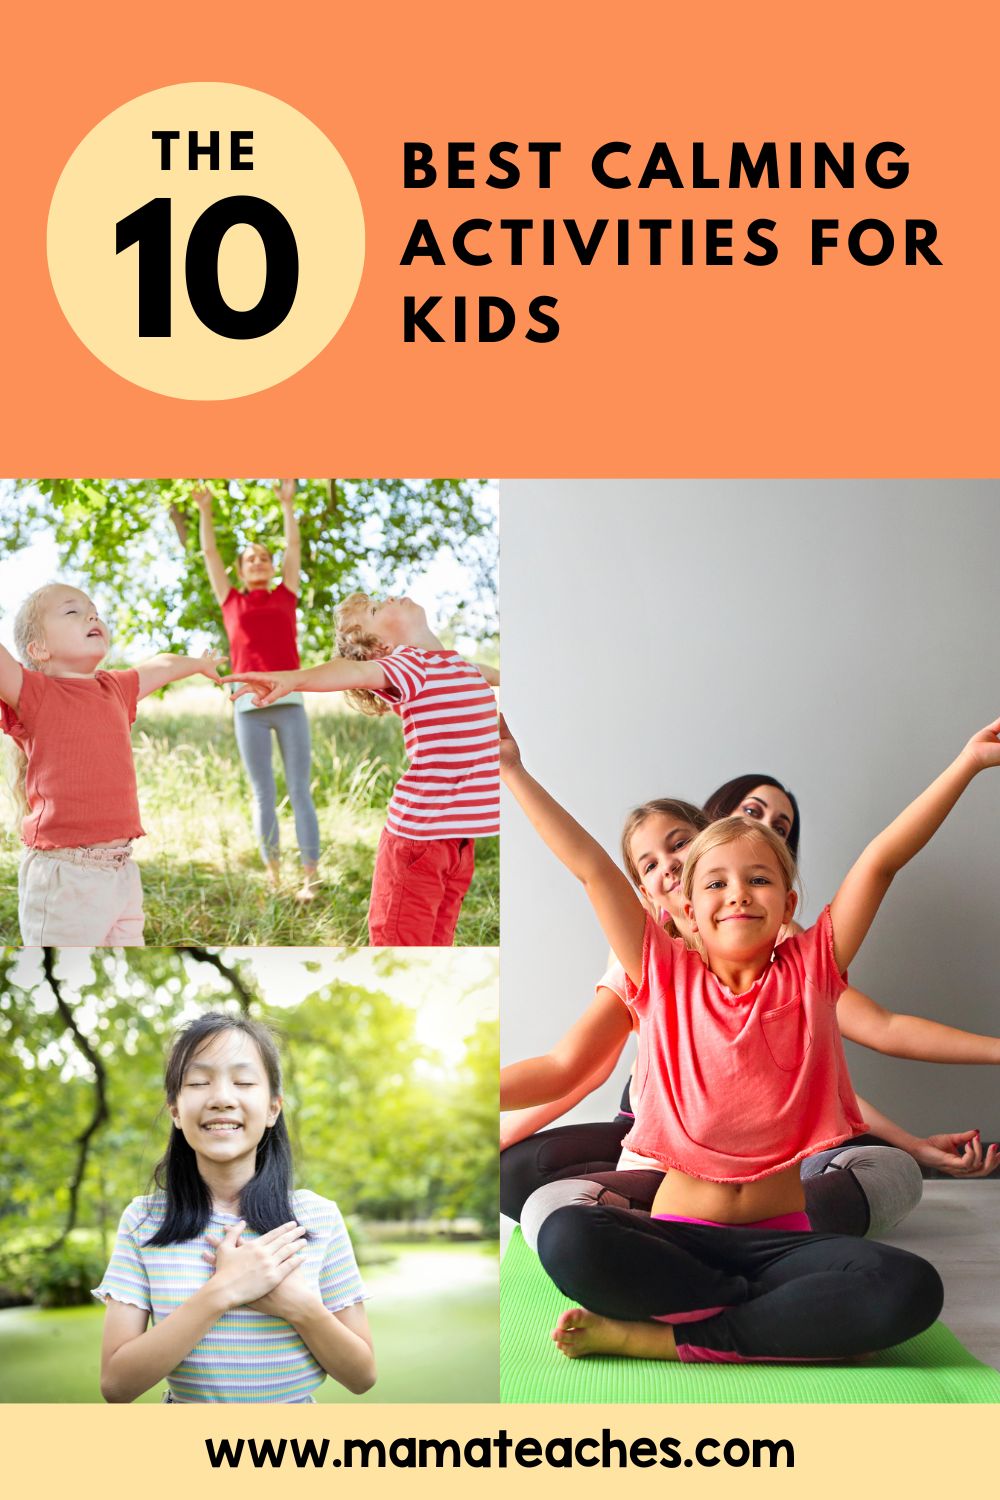 The 10 Best Calming Activities for Kids